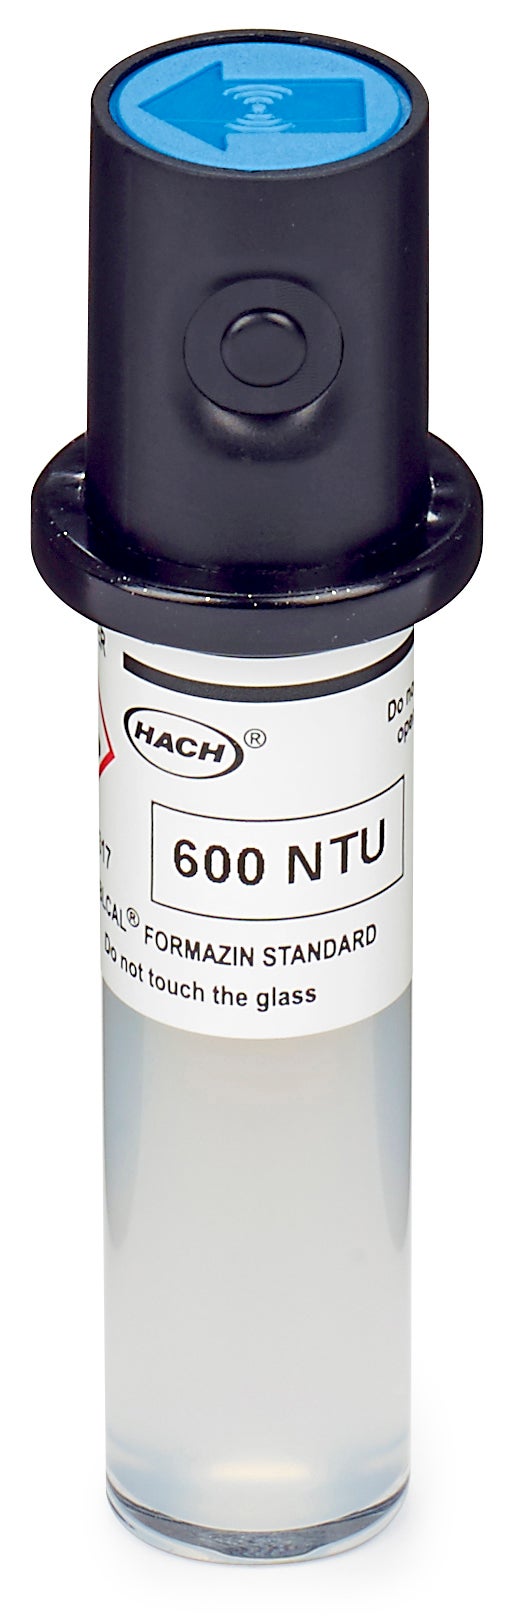 Stablcal-kalibratiekuvet, 600 NTU, met RFID voor TU5200, TU5300sc, en TU5400sc lasertroebelheidsmeter